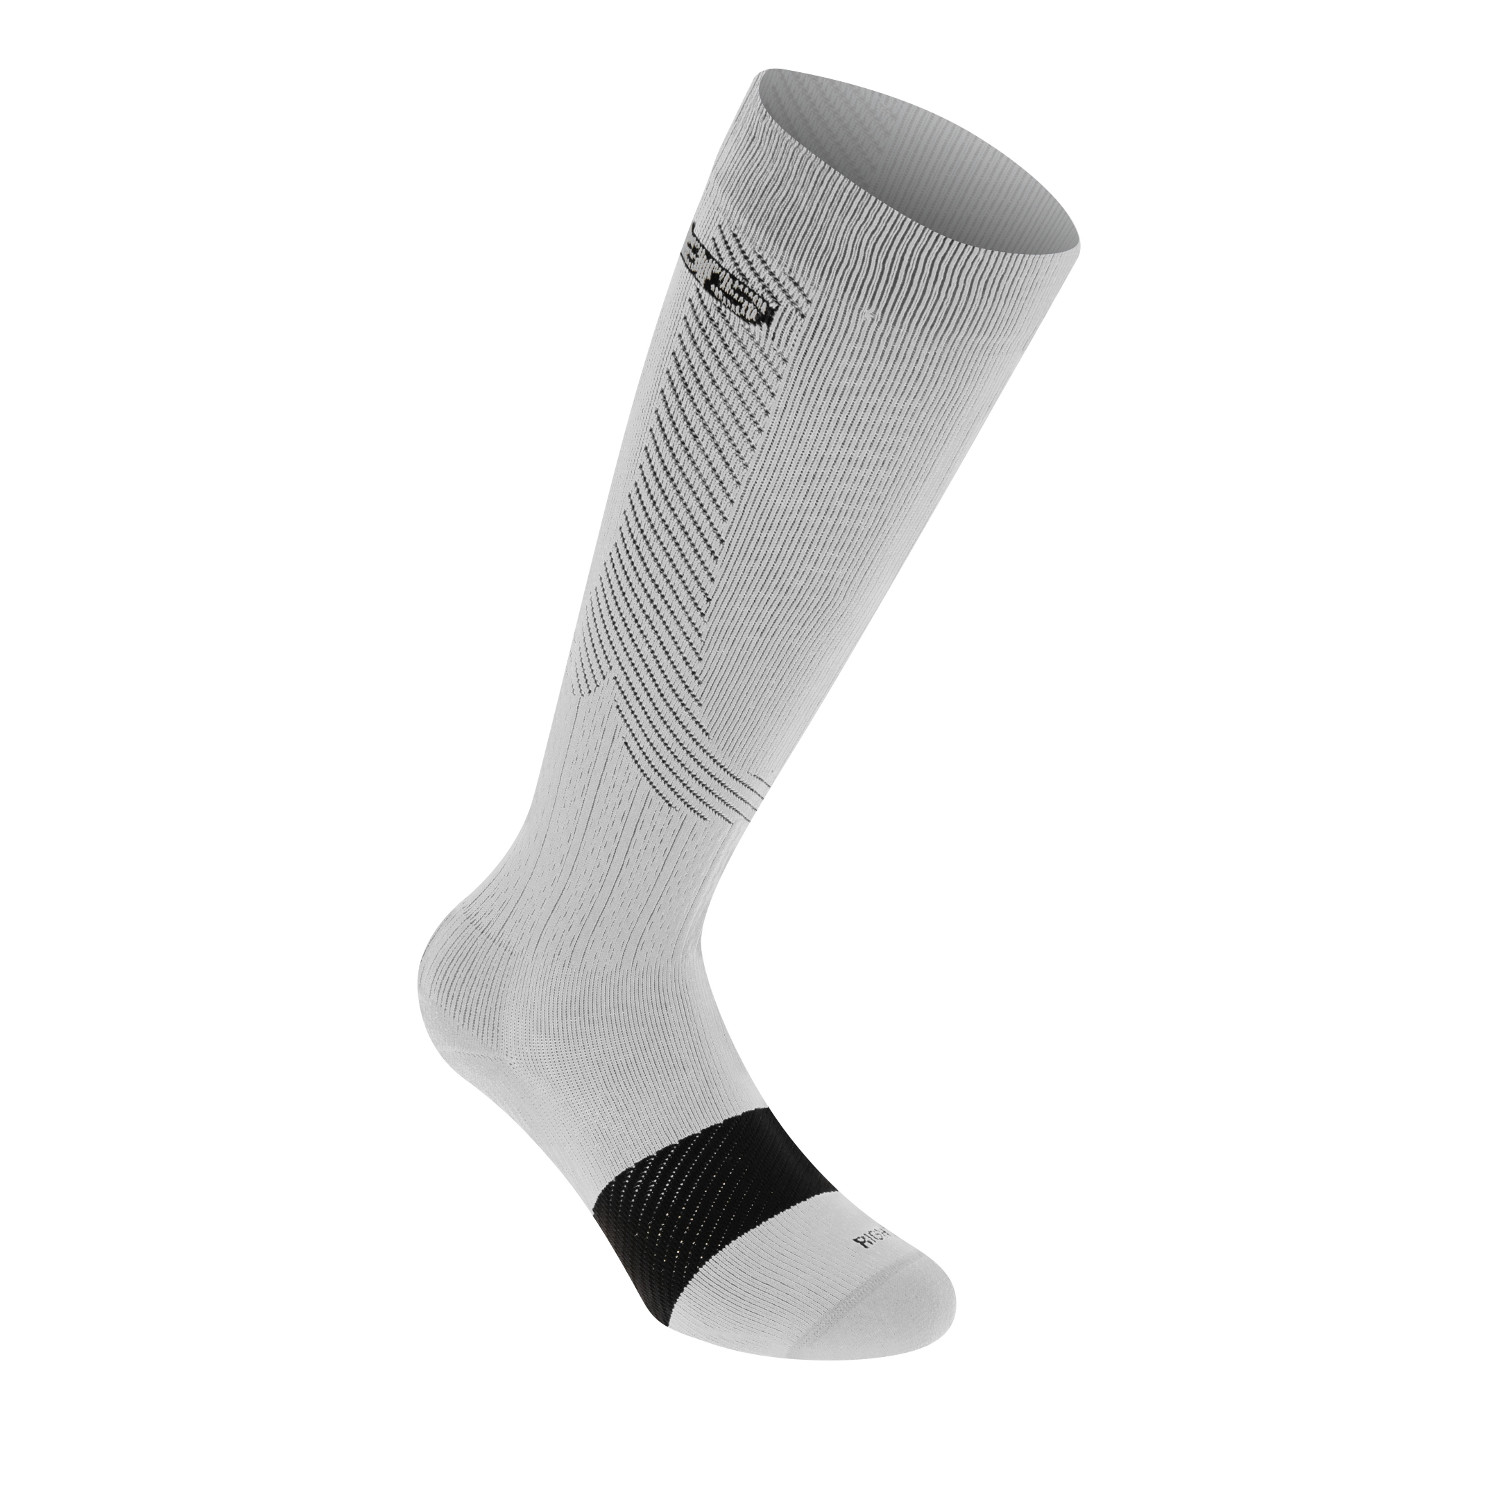 Alpinestars Socken Compression Weiß/Grau